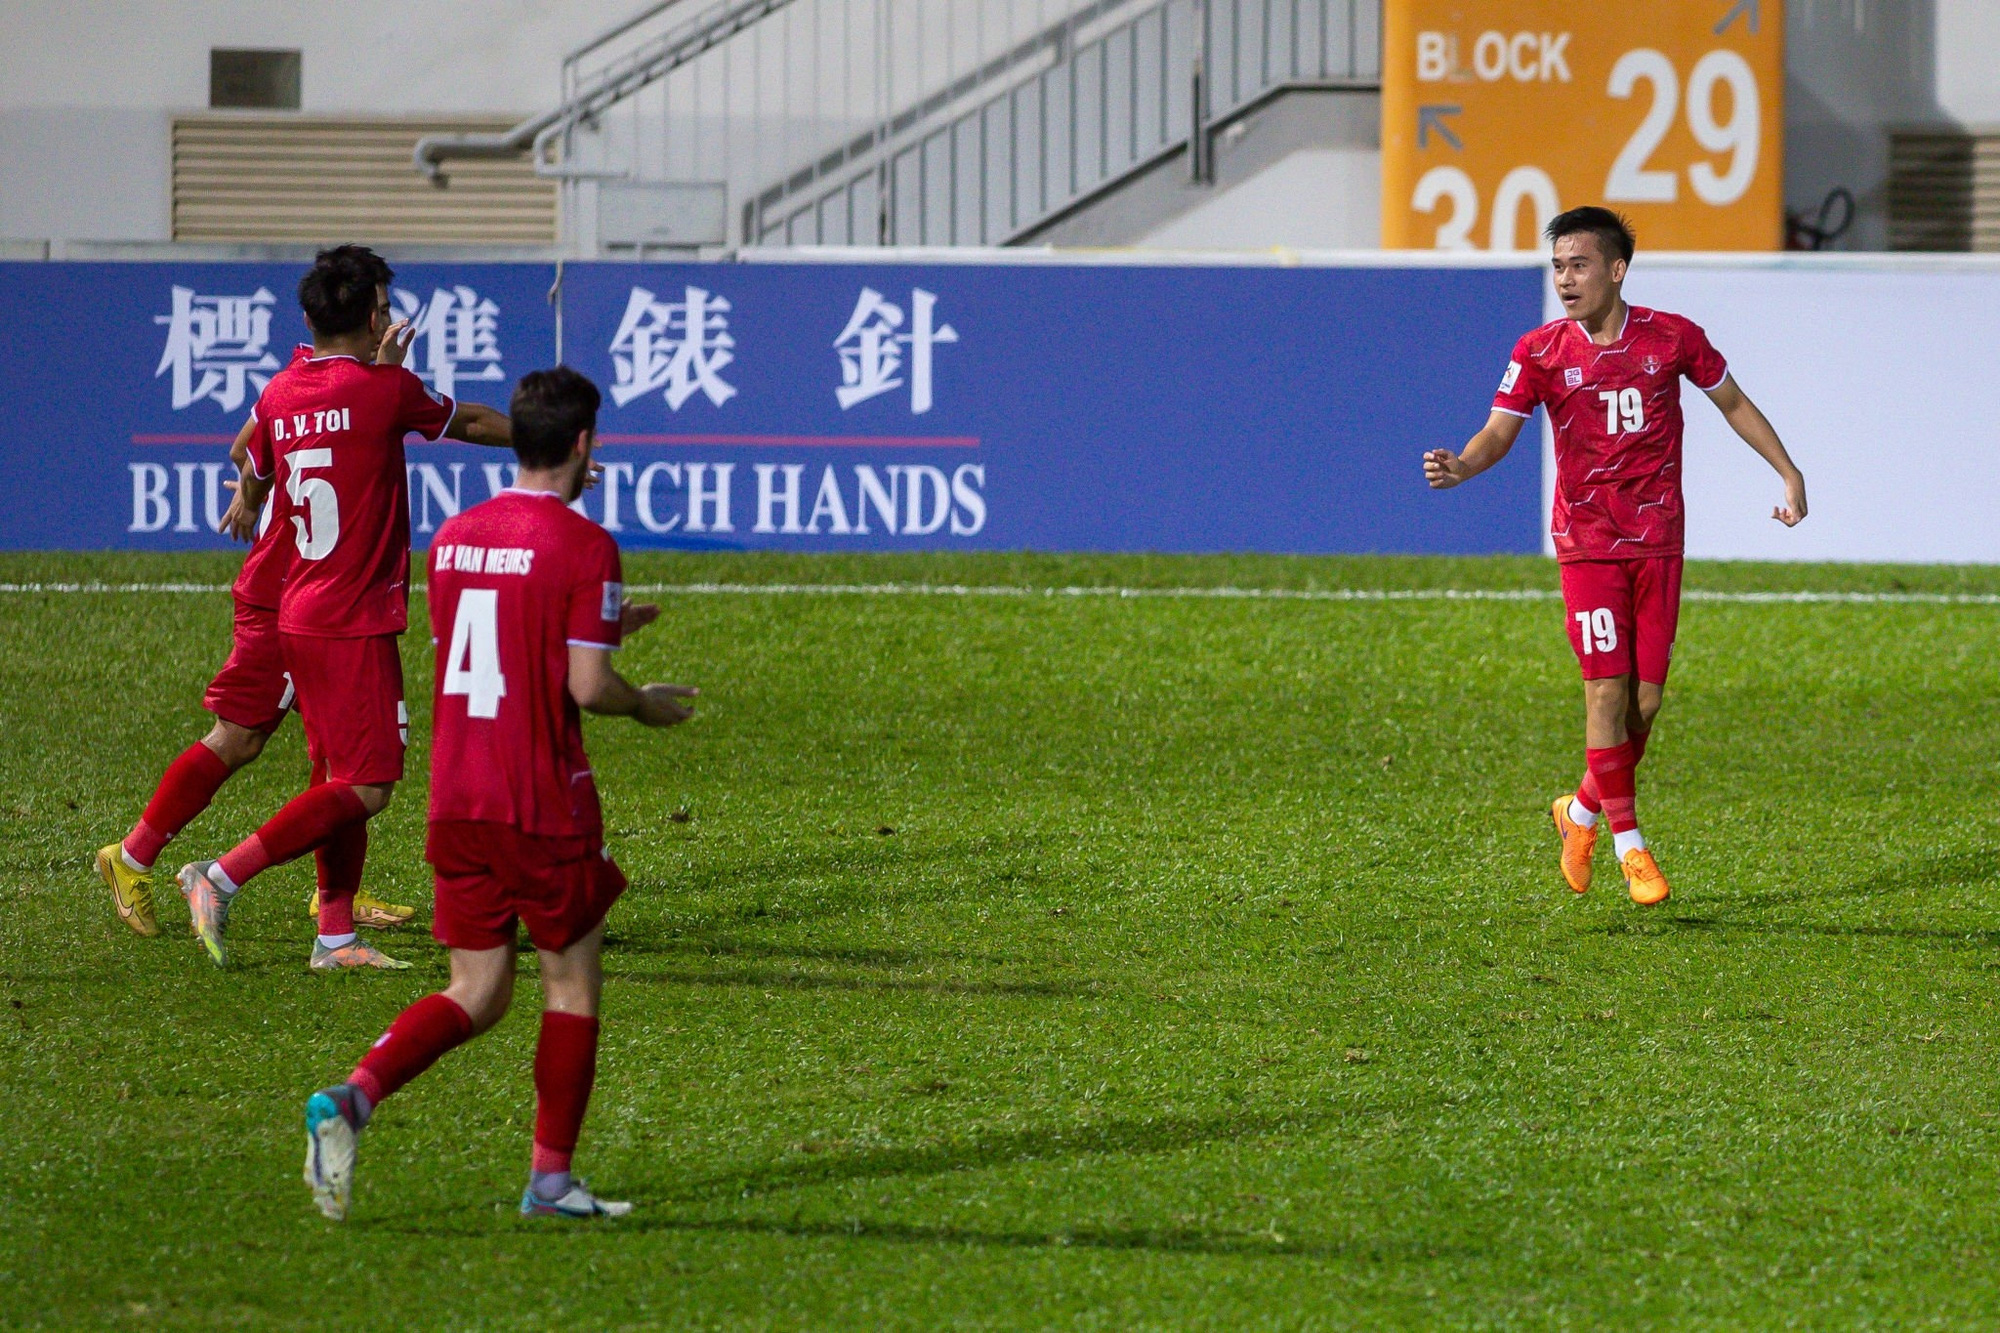 Thắng đậm đội bóng Hong Kong, Hải Phòng đi tiếp tại vòng loại AFC Champions League - Ảnh 1.